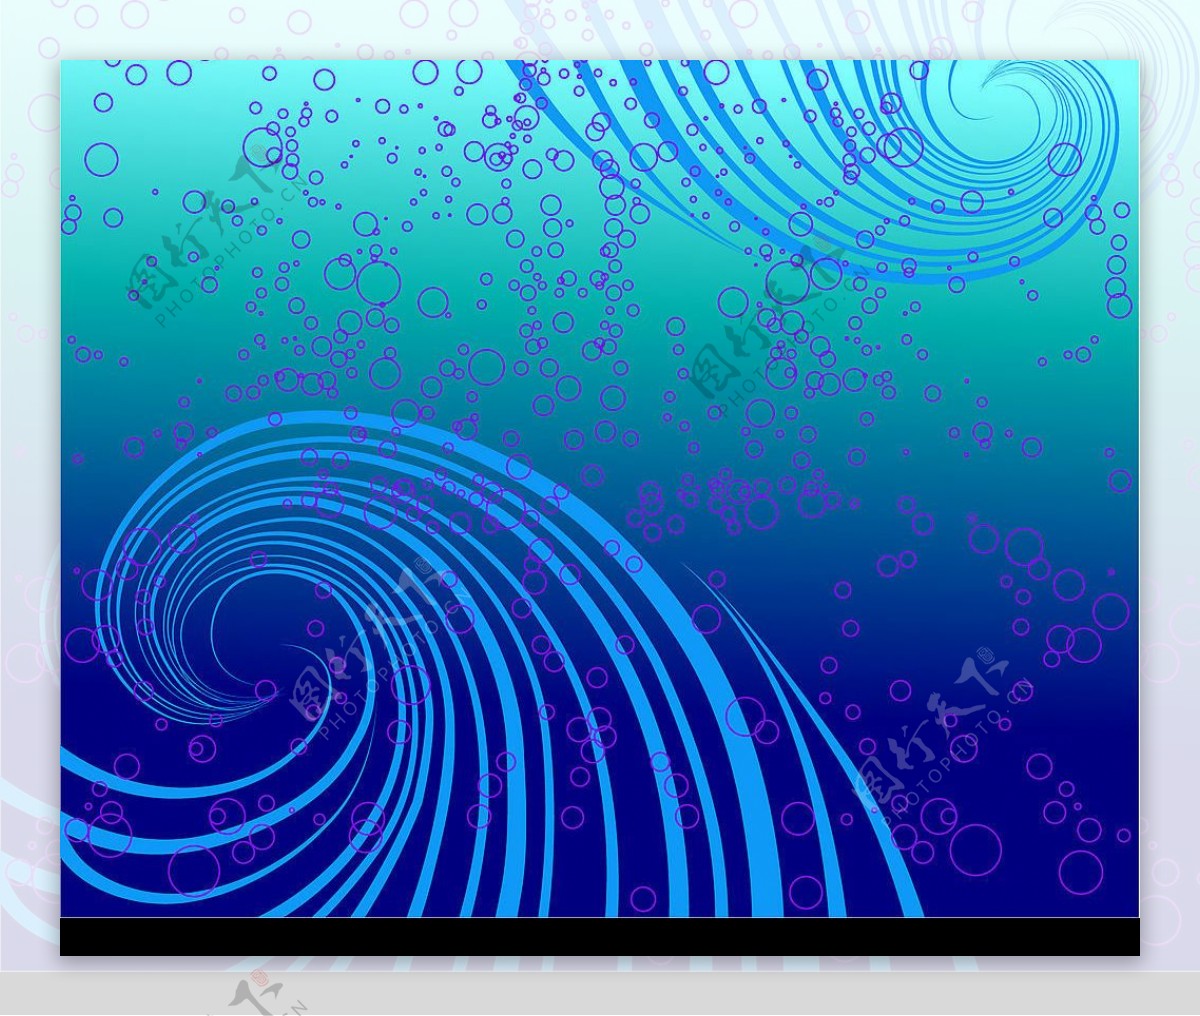 蓝色旋涡与紫色气泡矢量图图片